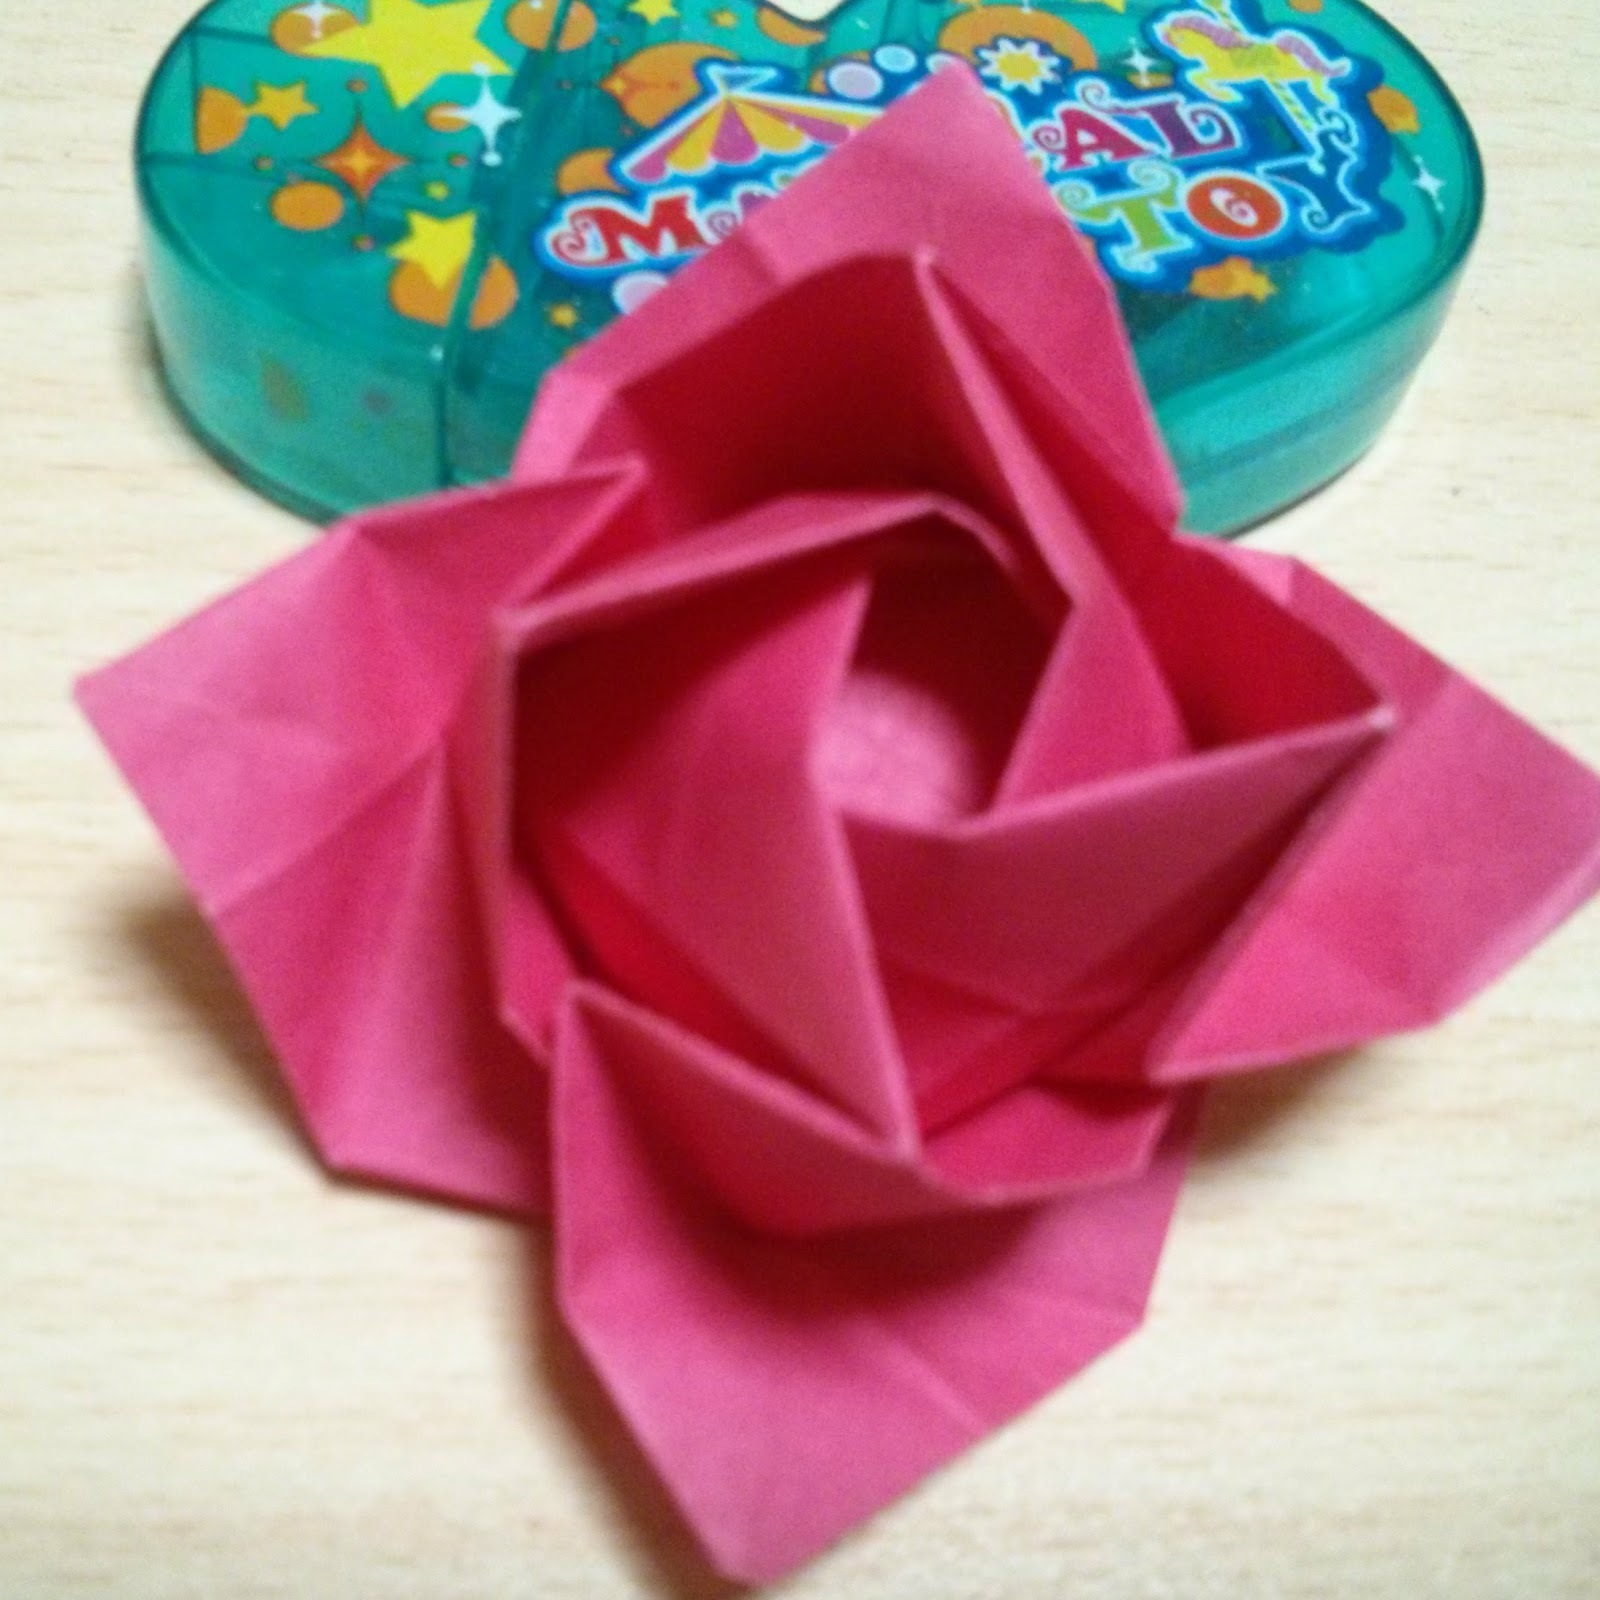 コンプリート 折り紙 薔薇 立体 折り方 画像 折り紙 薔薇 立体 折り方 画像 Mbaheblogjpv7cj